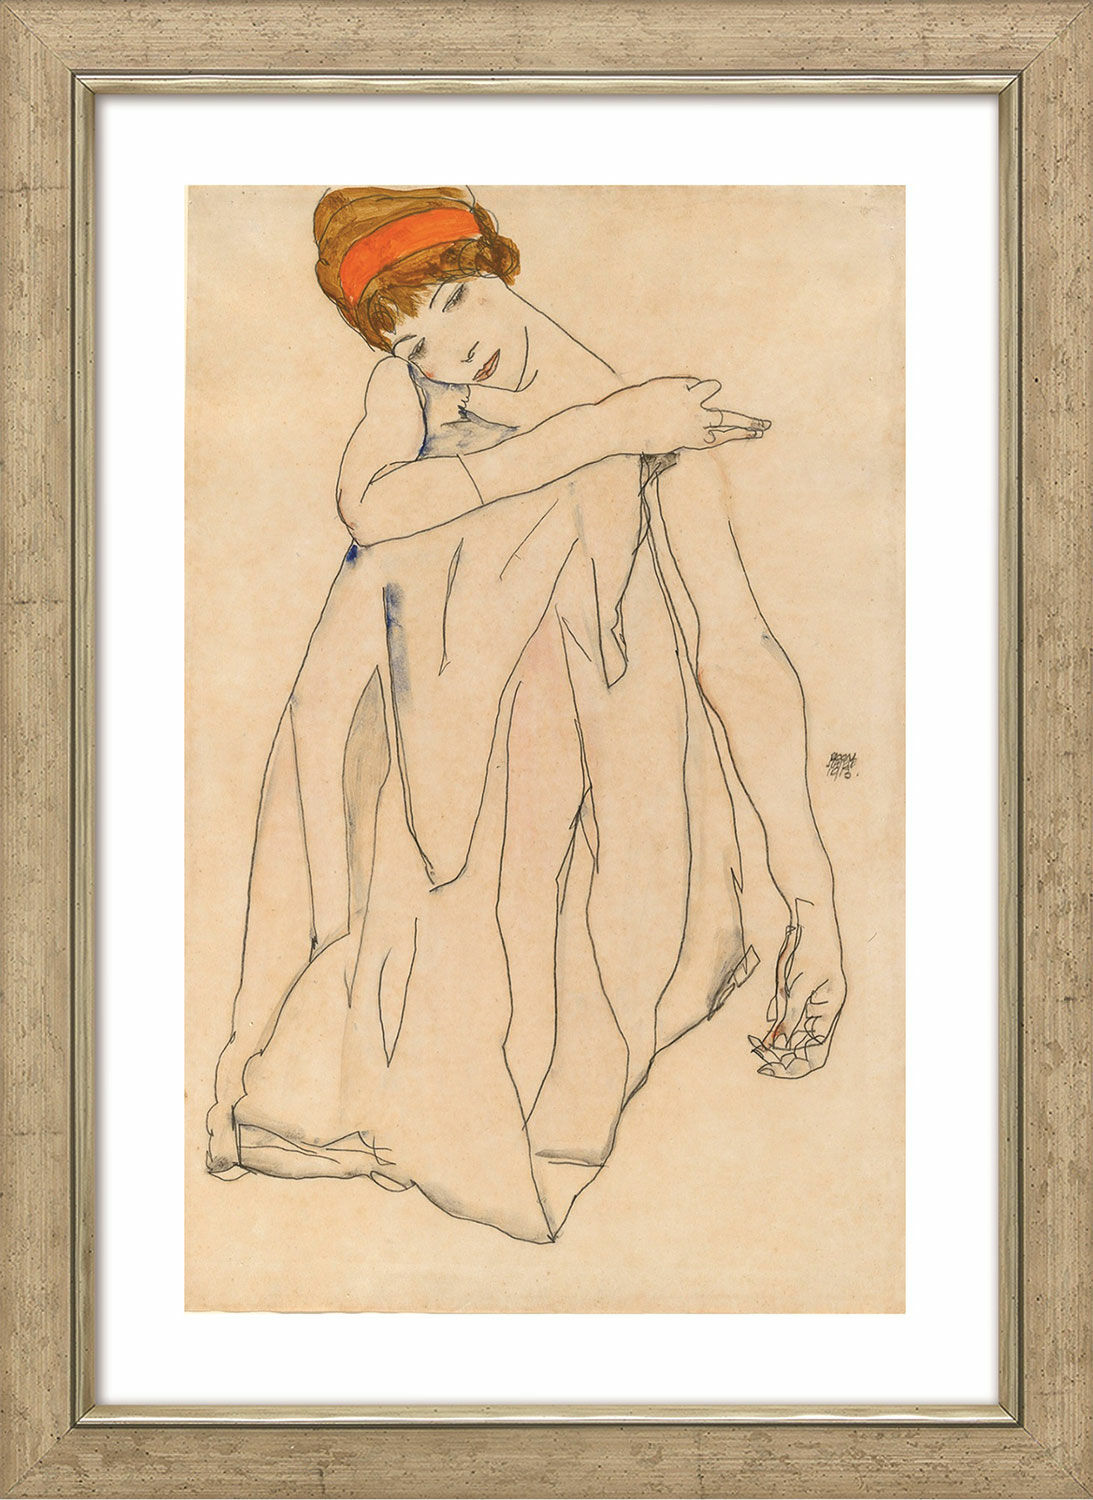 Tableau "La danseuse" (1913), encadré von Egon Schiele